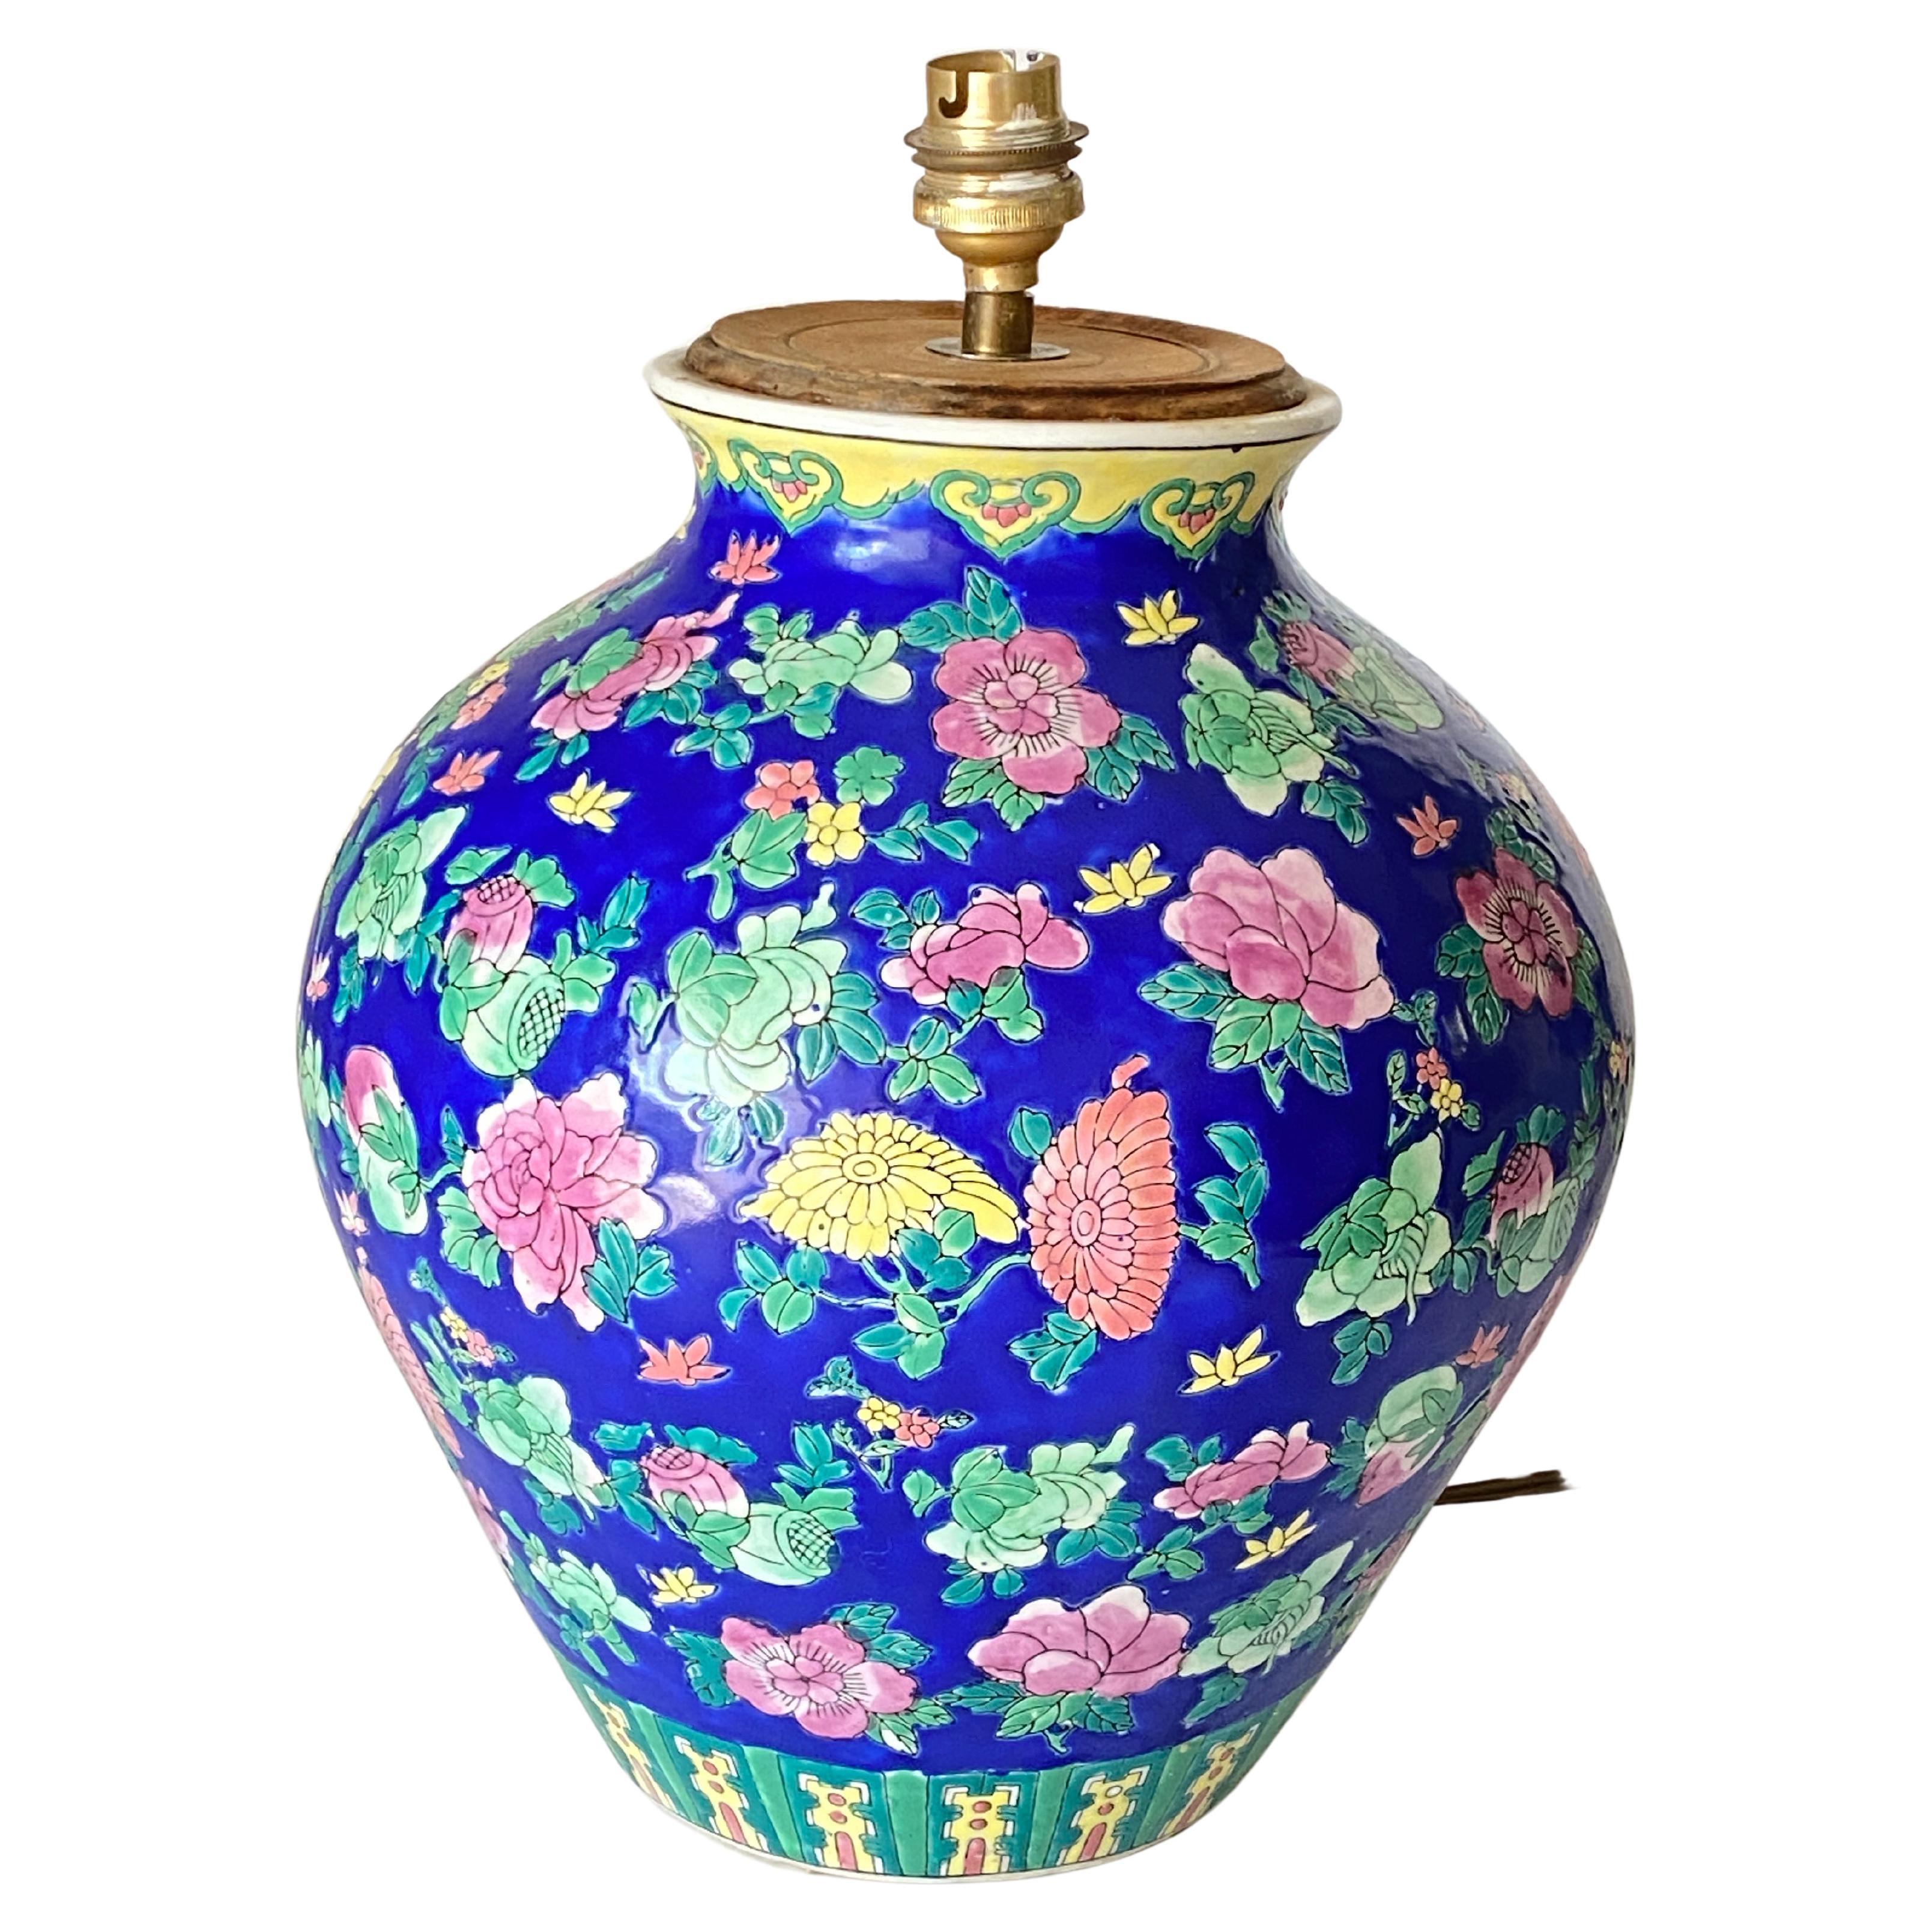 Vase, lampe de table, en porcelaine. Il a été fabriqué en Chine, vers 1940.
Les motifs décoratifs sont des fleurs et des feuilles.